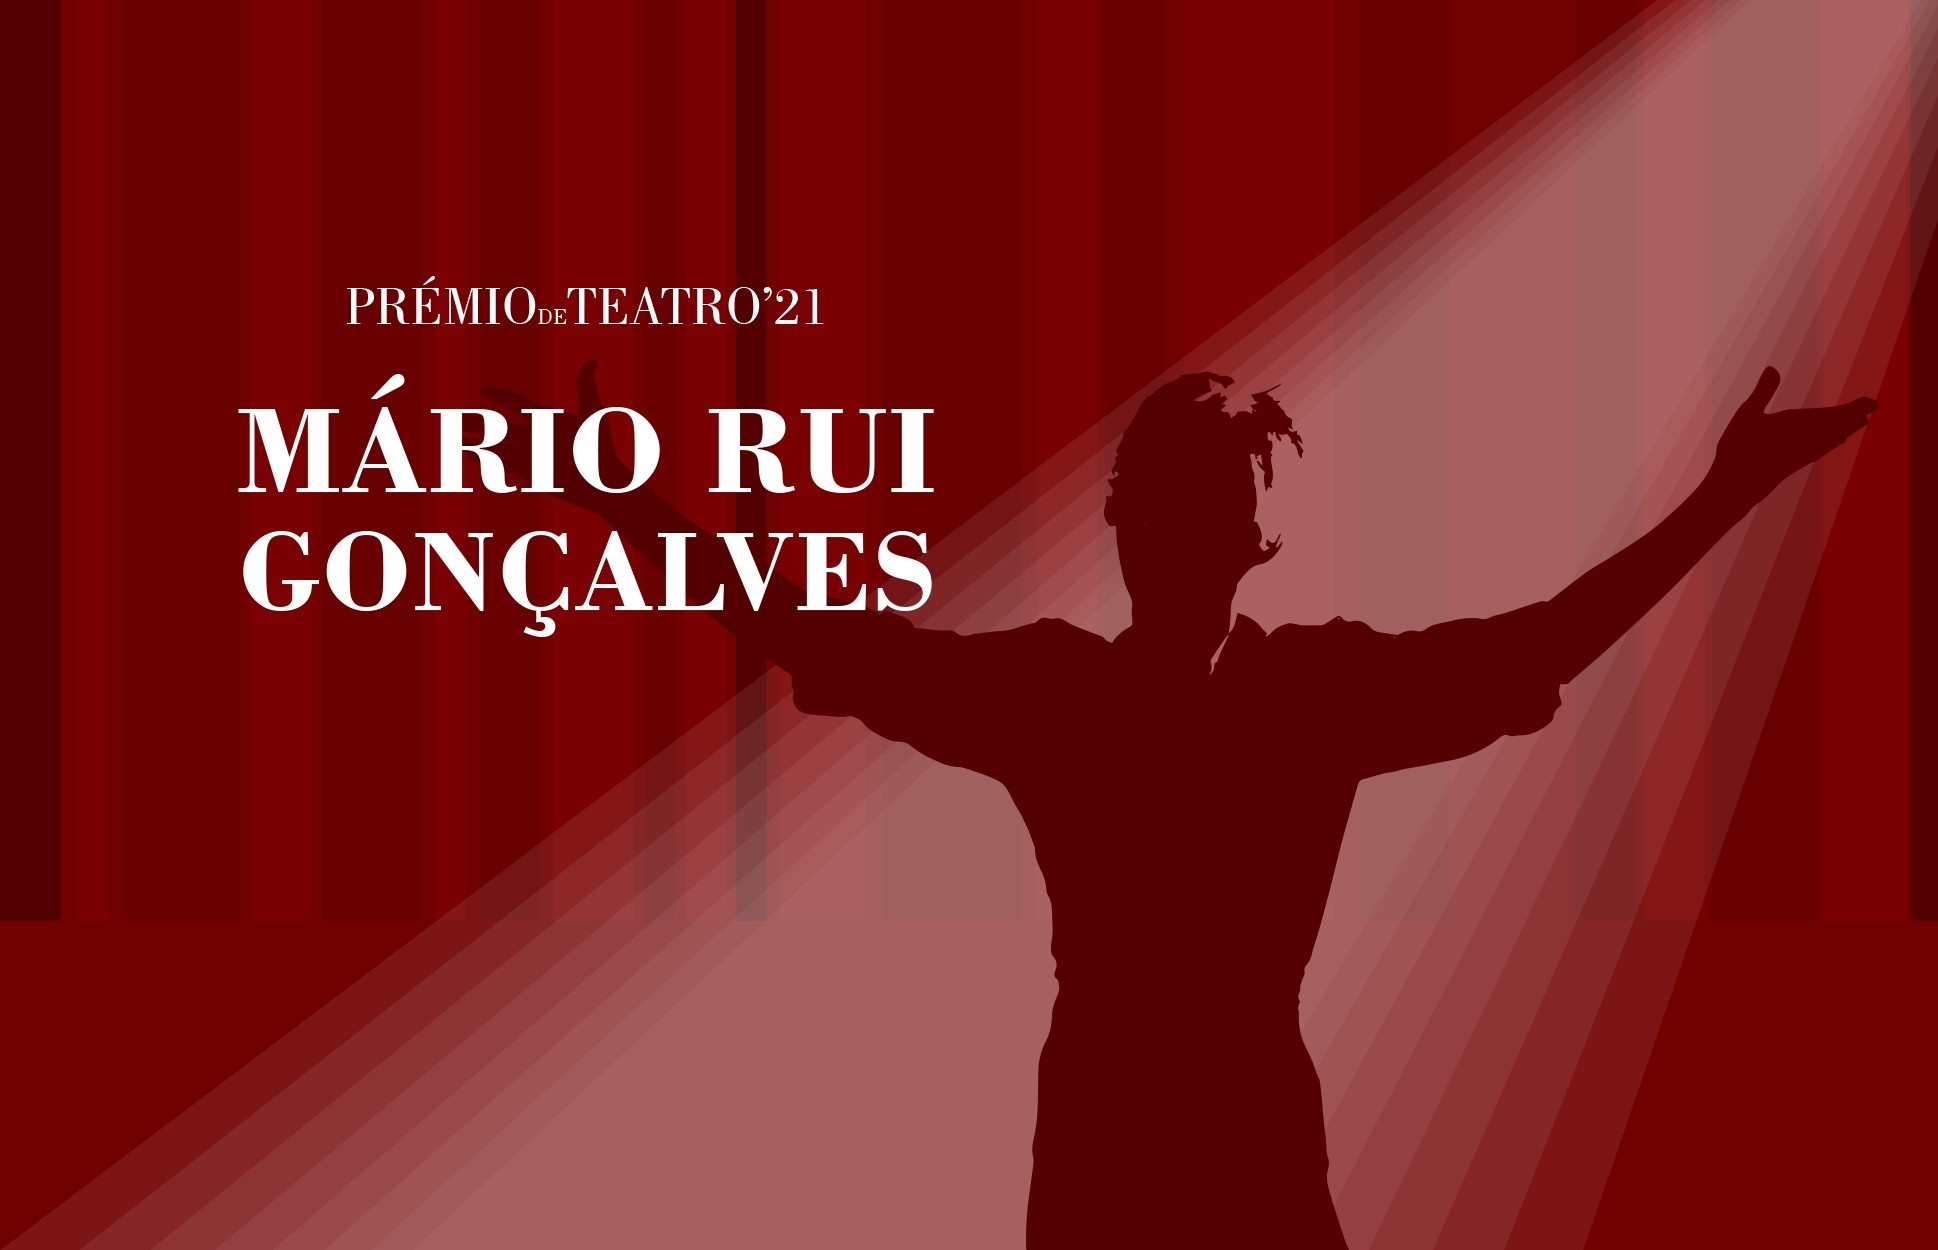 Prémio de Teatro Mário Rui Gonçalves - inscrições terminam a 17 setembro